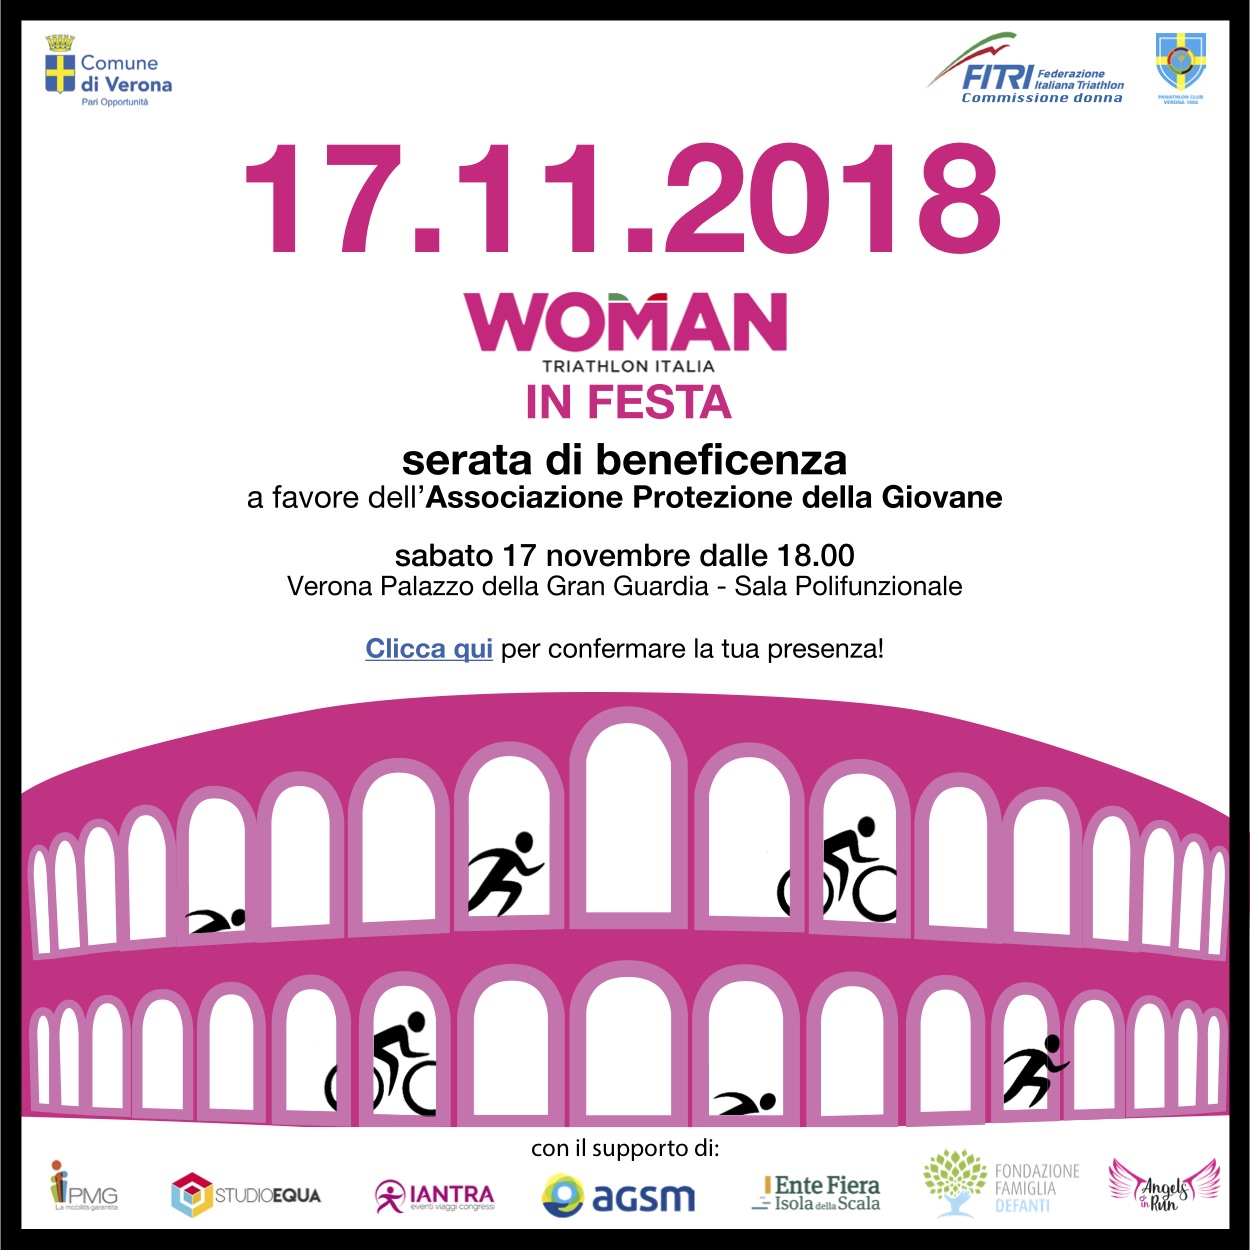 Woman Triathlon Italia in festa per beneficenza